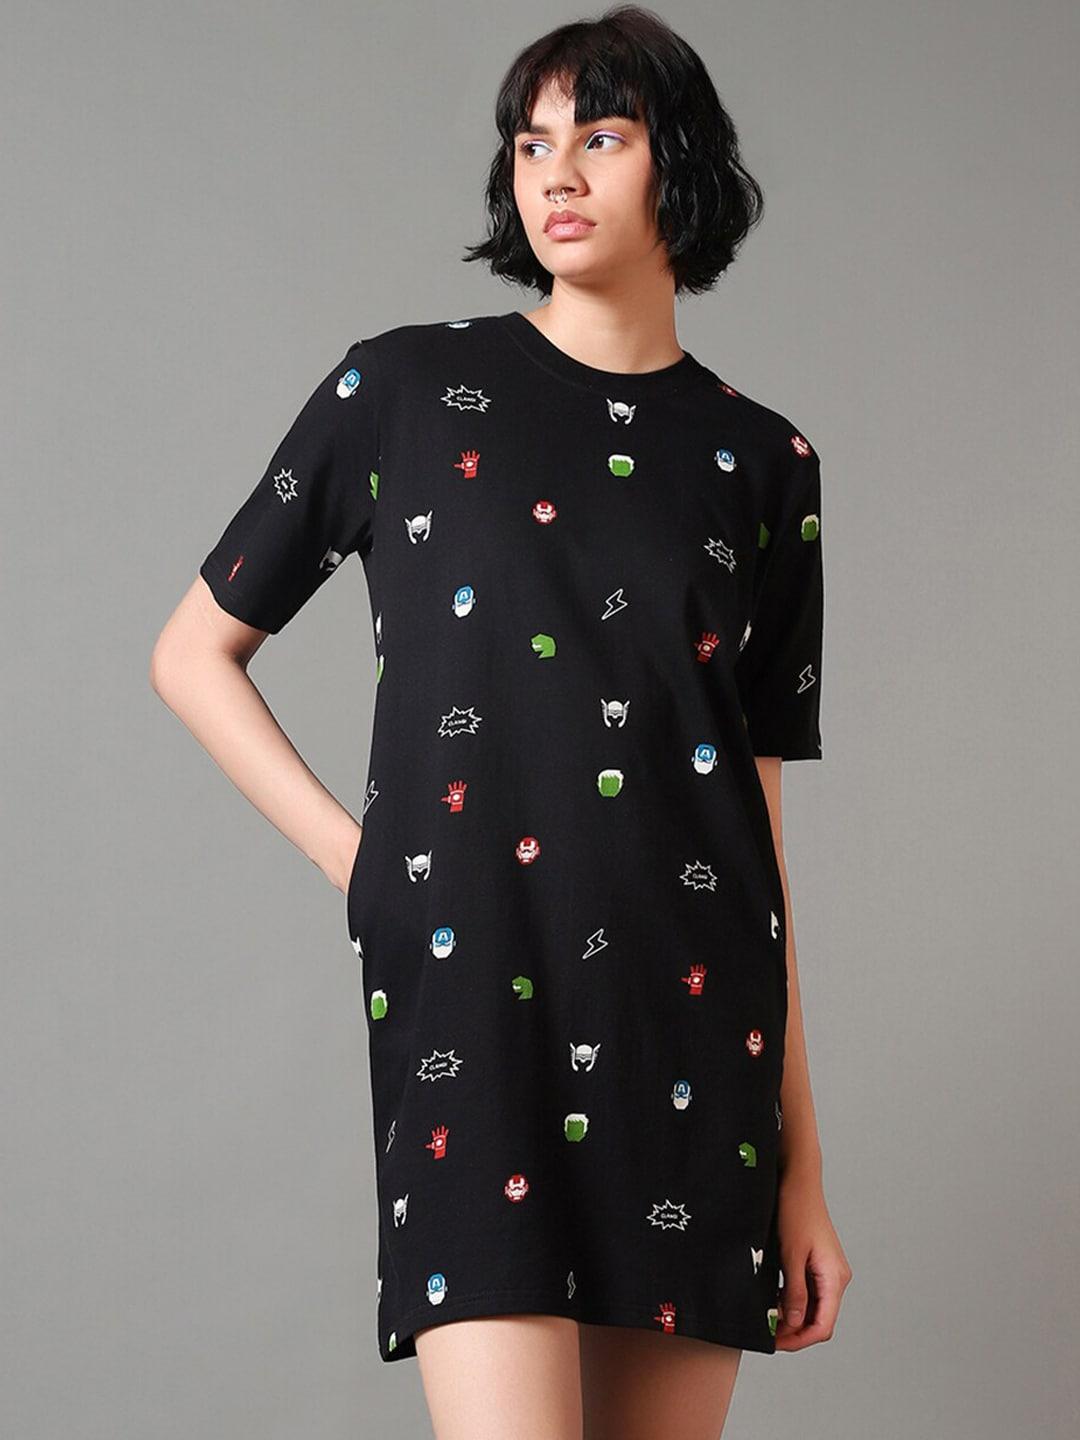 bewakoof conversational printed cotton t-shirt dress